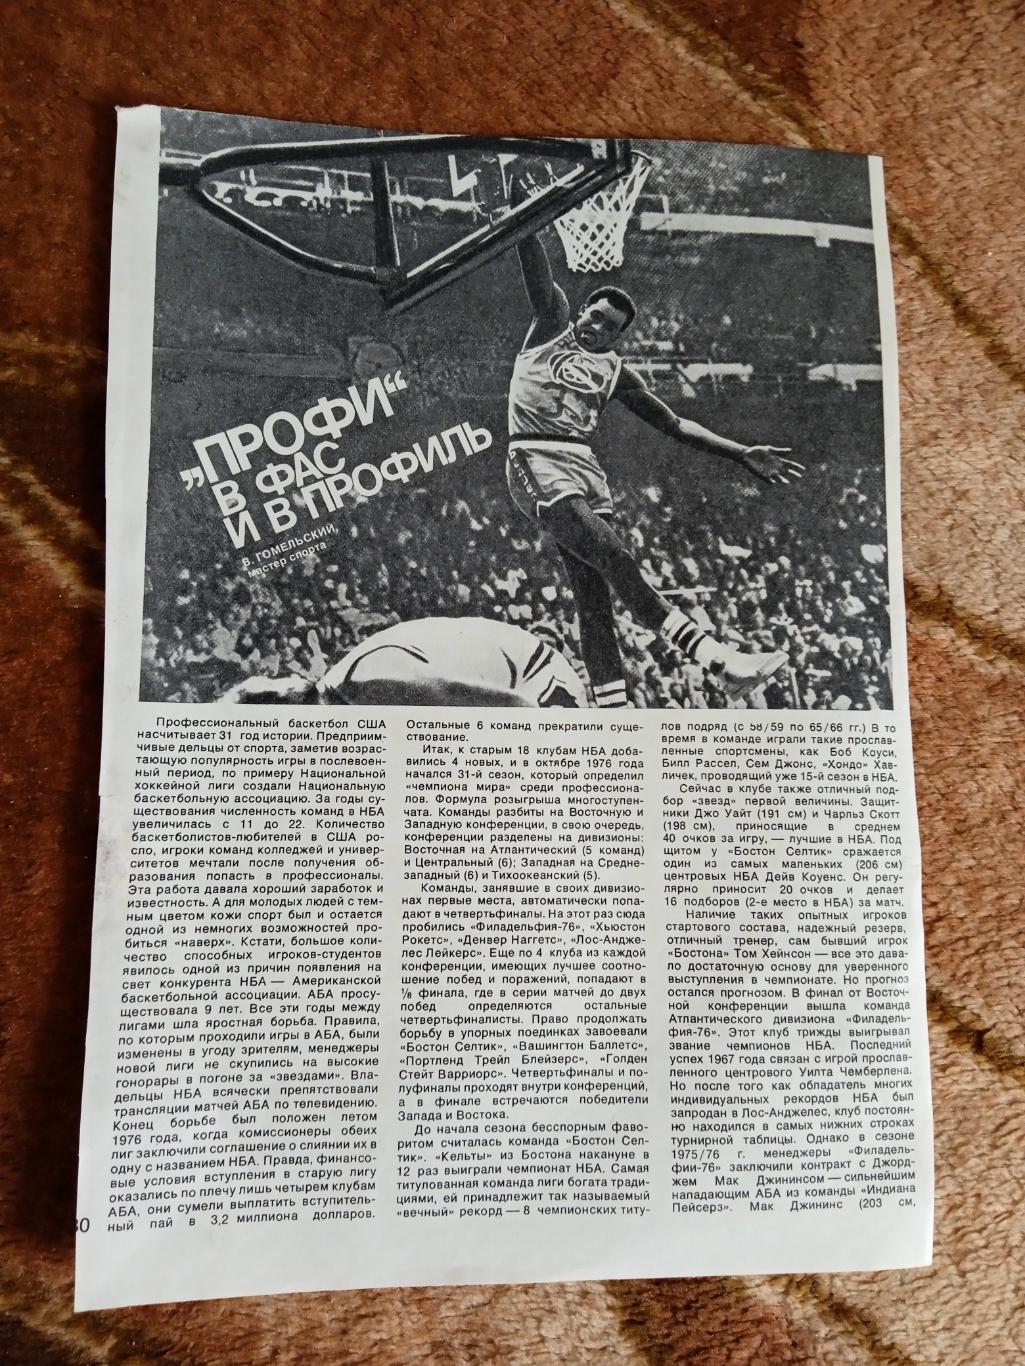 Статья.Фото.Баскетбол.НБА.Журнал СИ 1978.